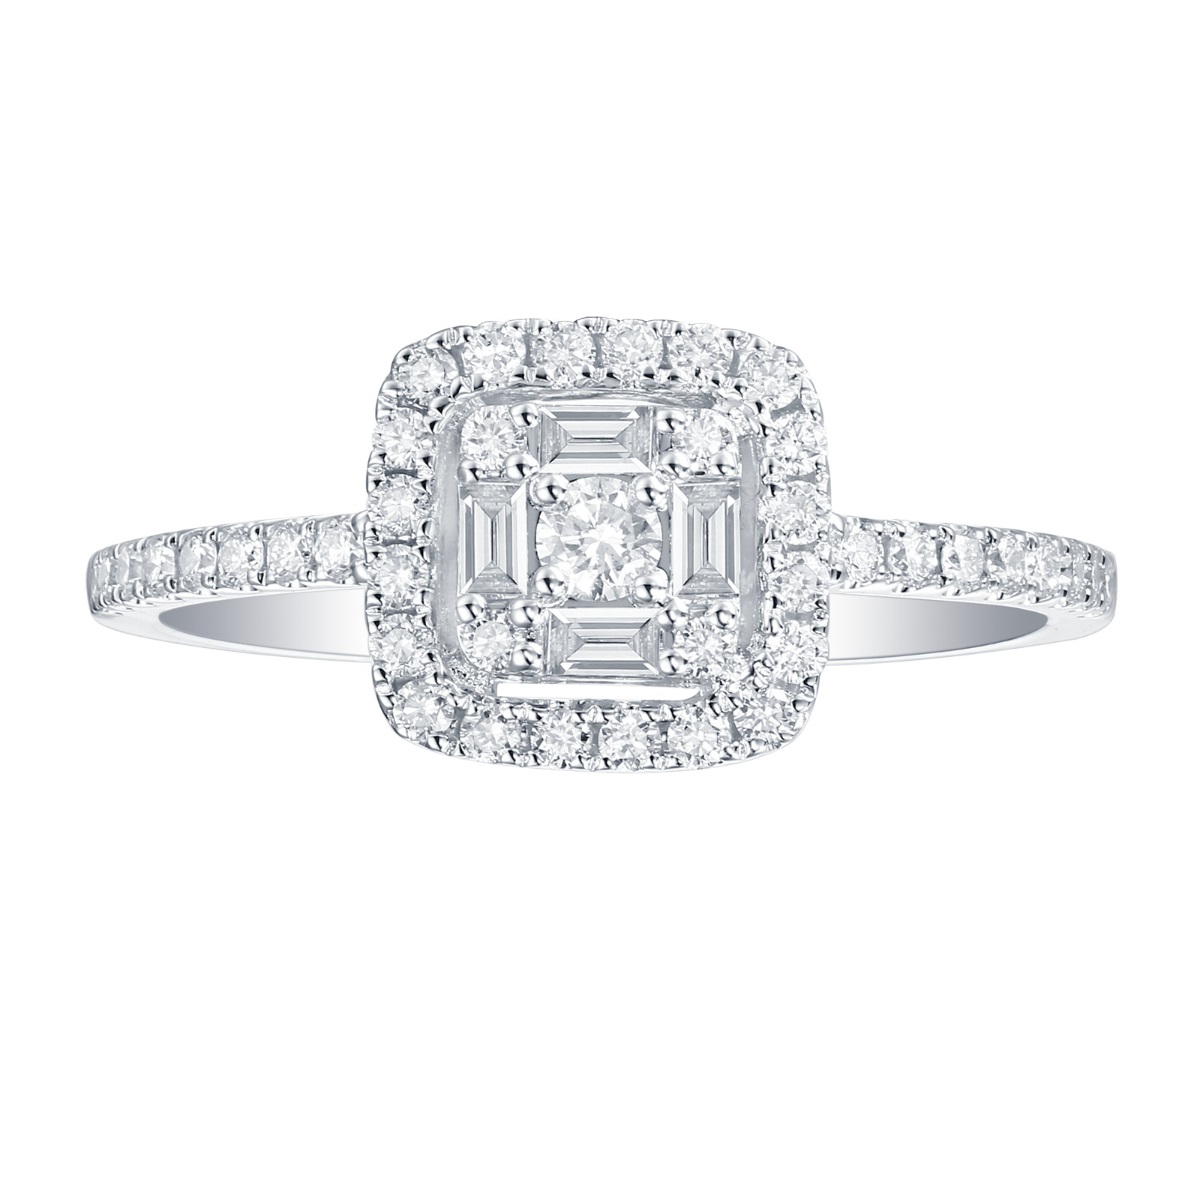 R36436WHT – 18K White Gold Diamond Ring, 0.43 TCW